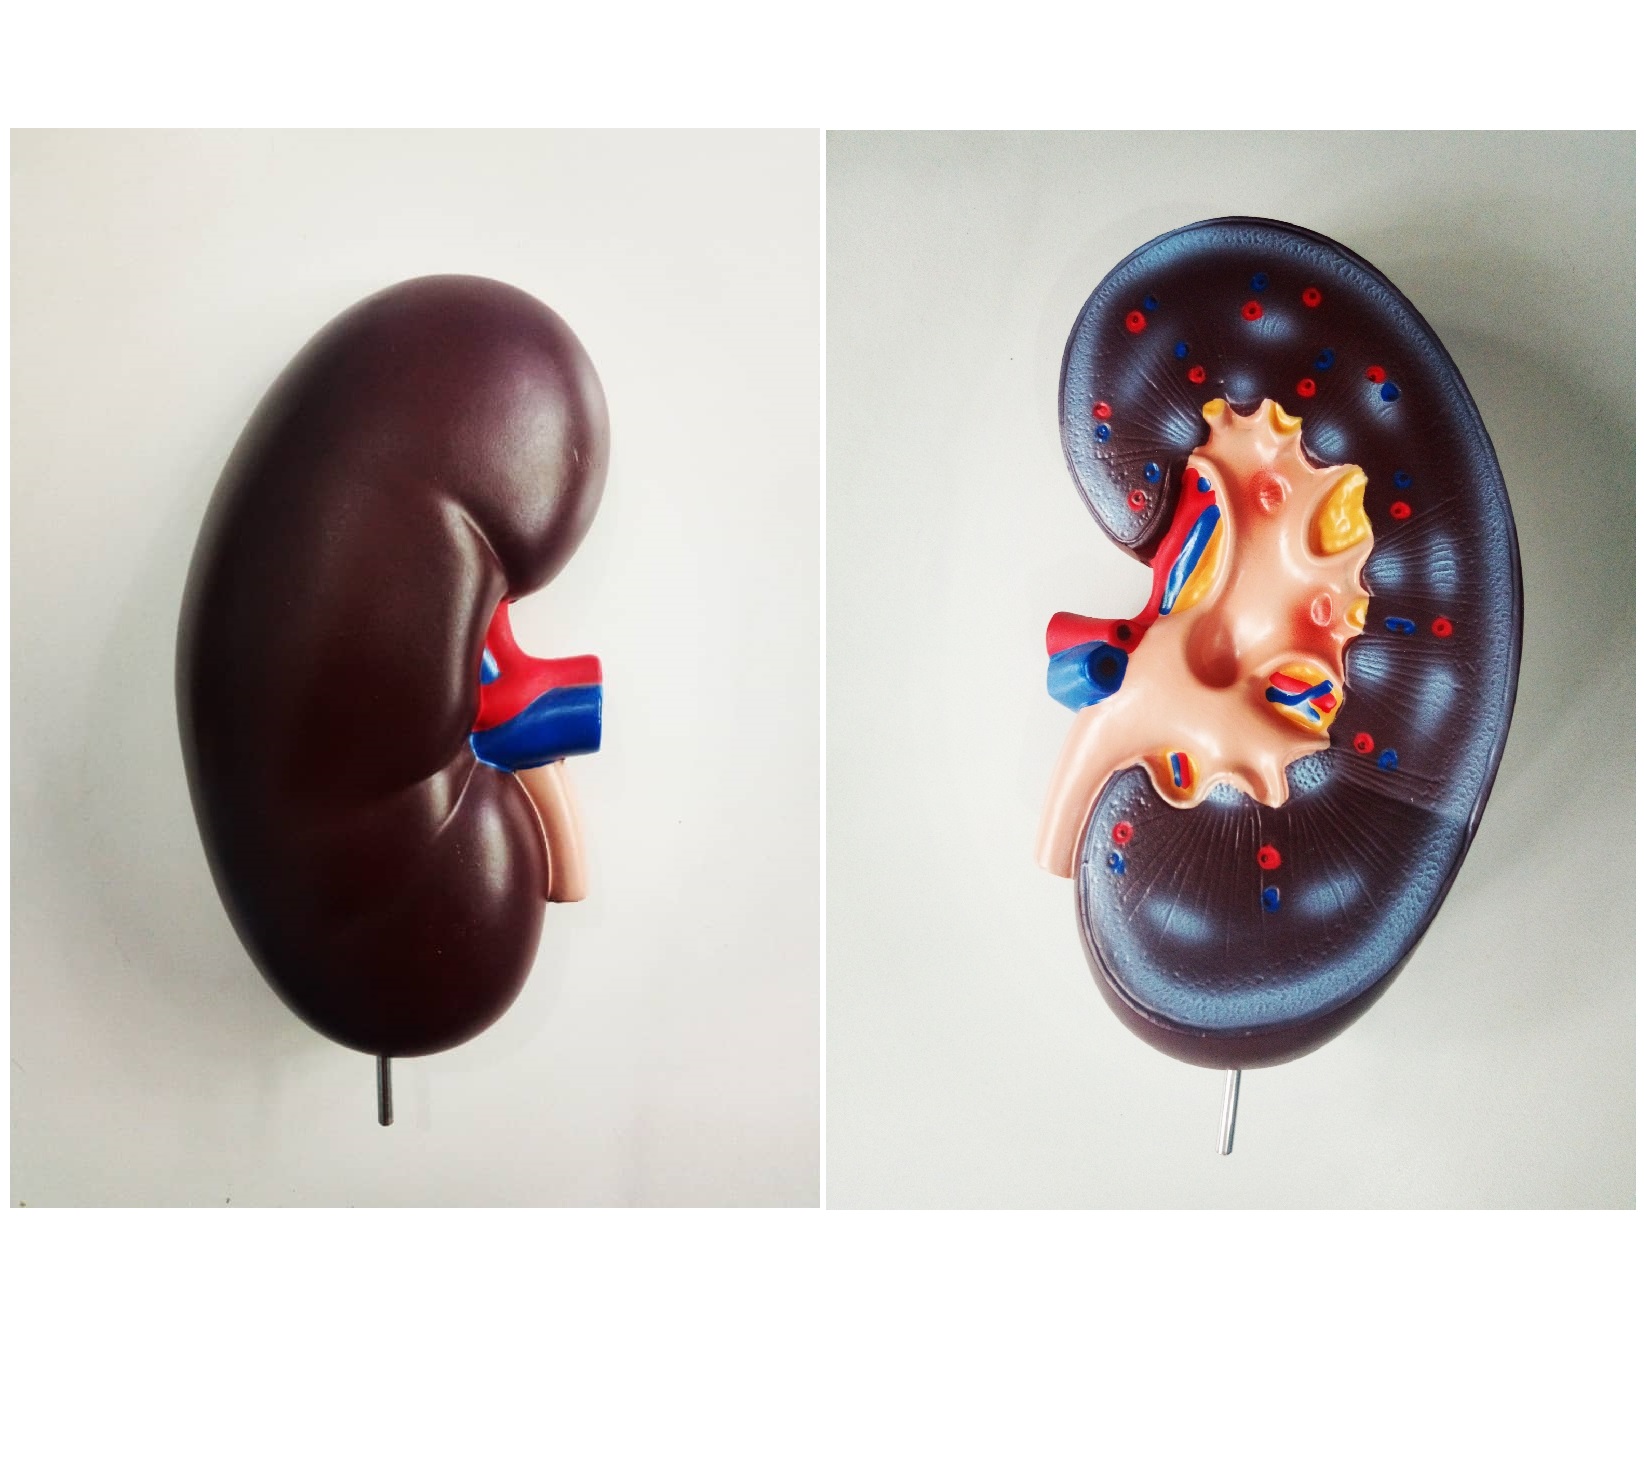 Kidney Model (1 part)